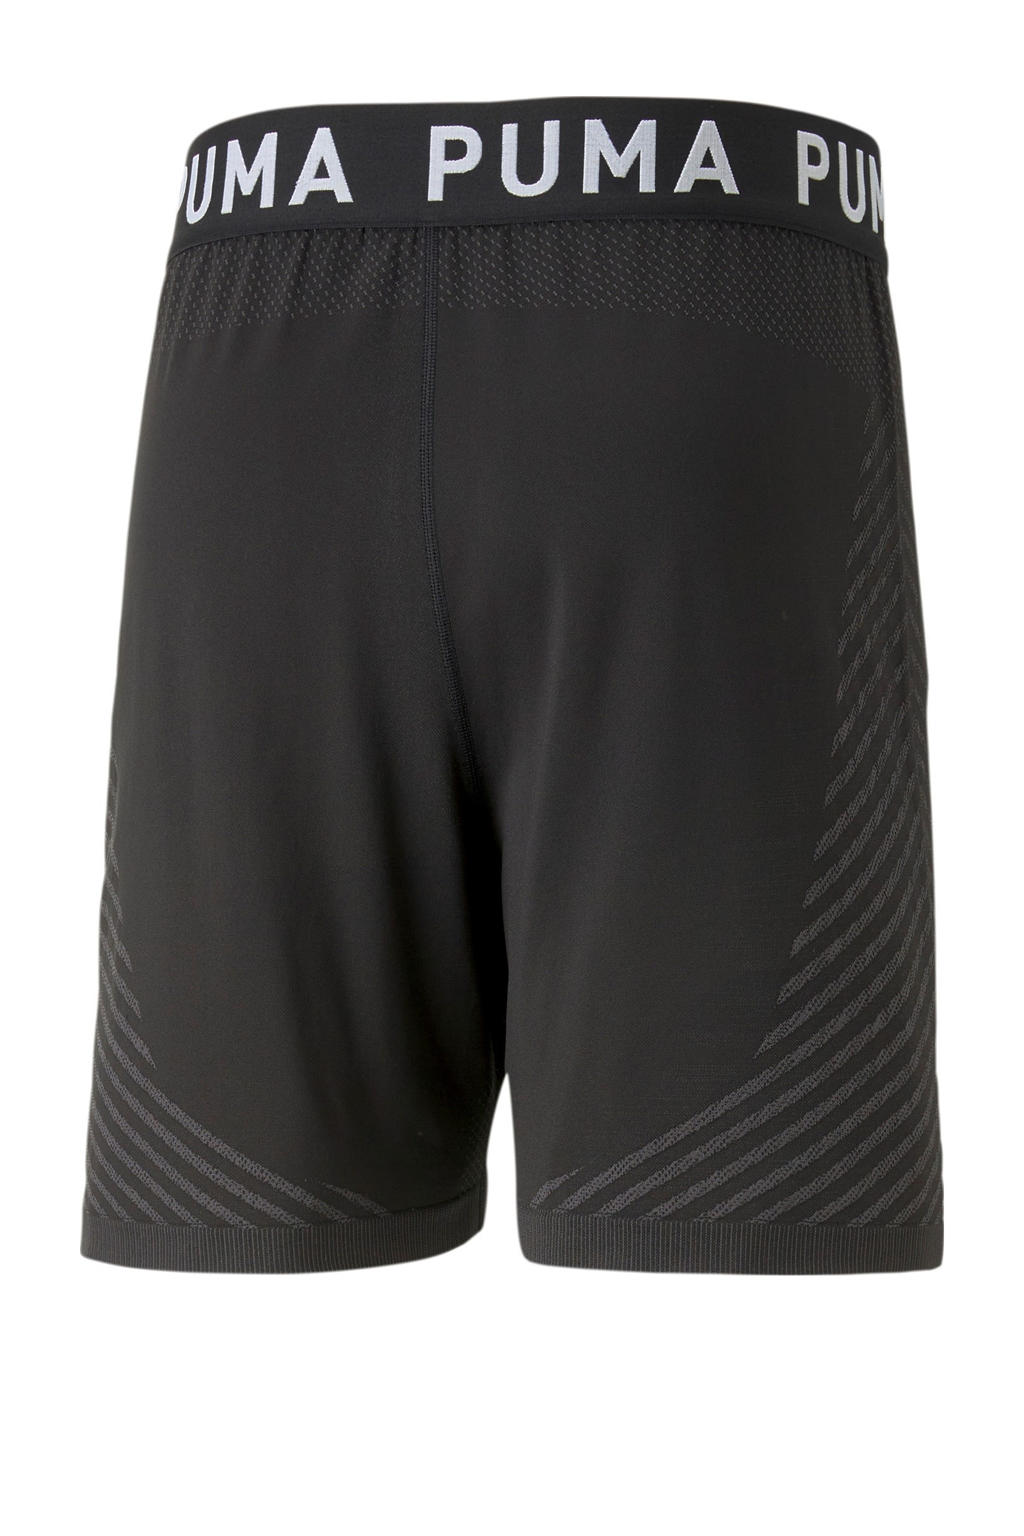 Zwarte heren Puma sportshort van polyester met regular fit, regular waist, elastische tailleband en logo dessin